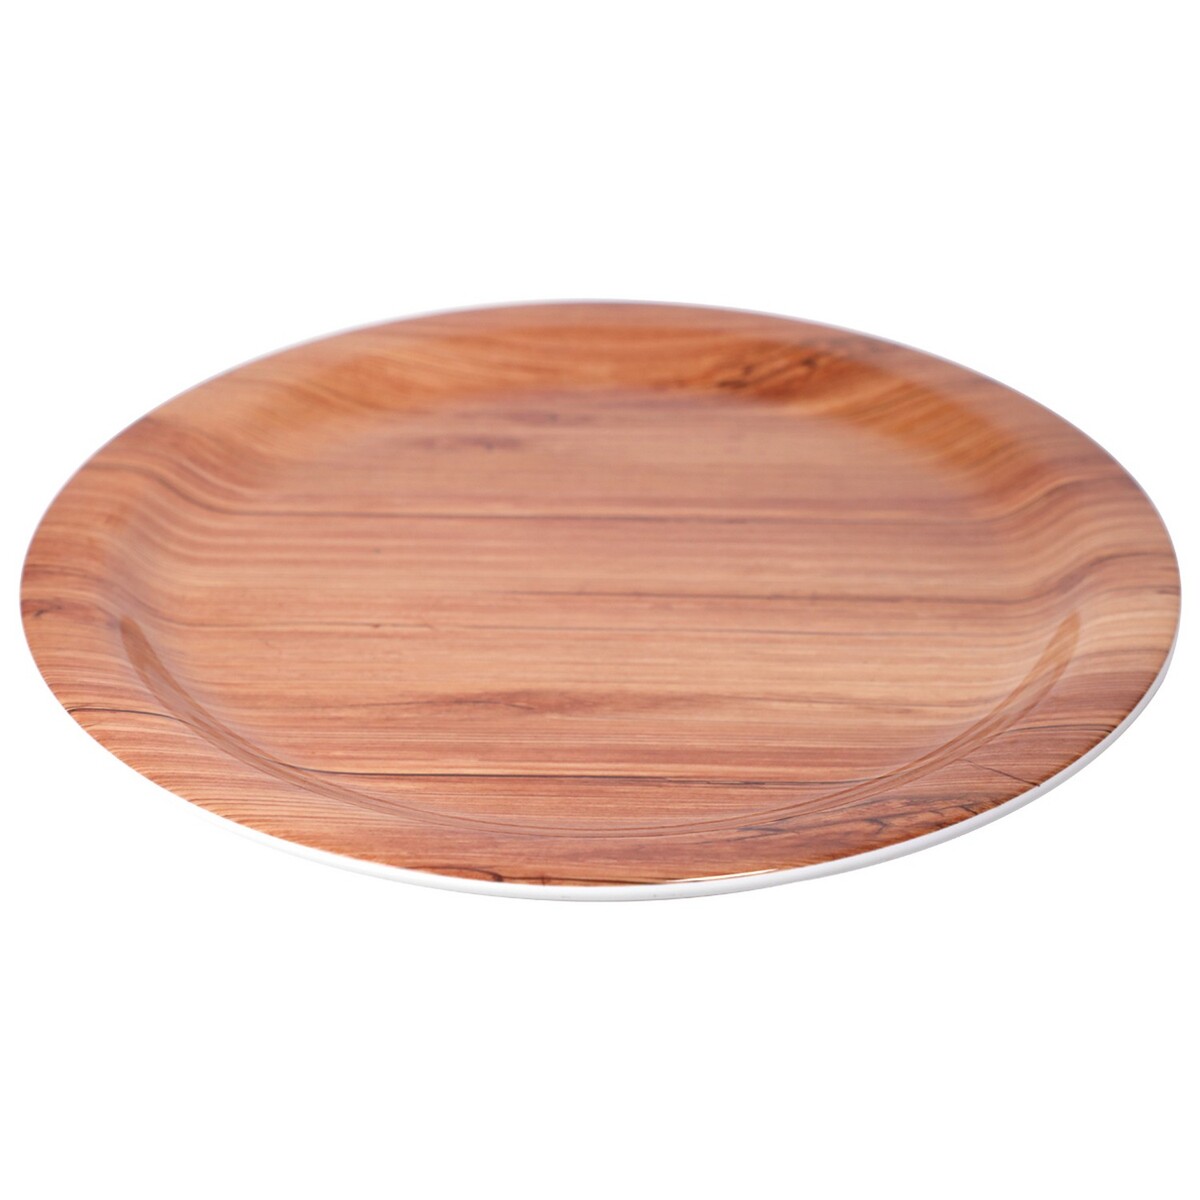 Servewell Round Plate Teak Wood 32cm